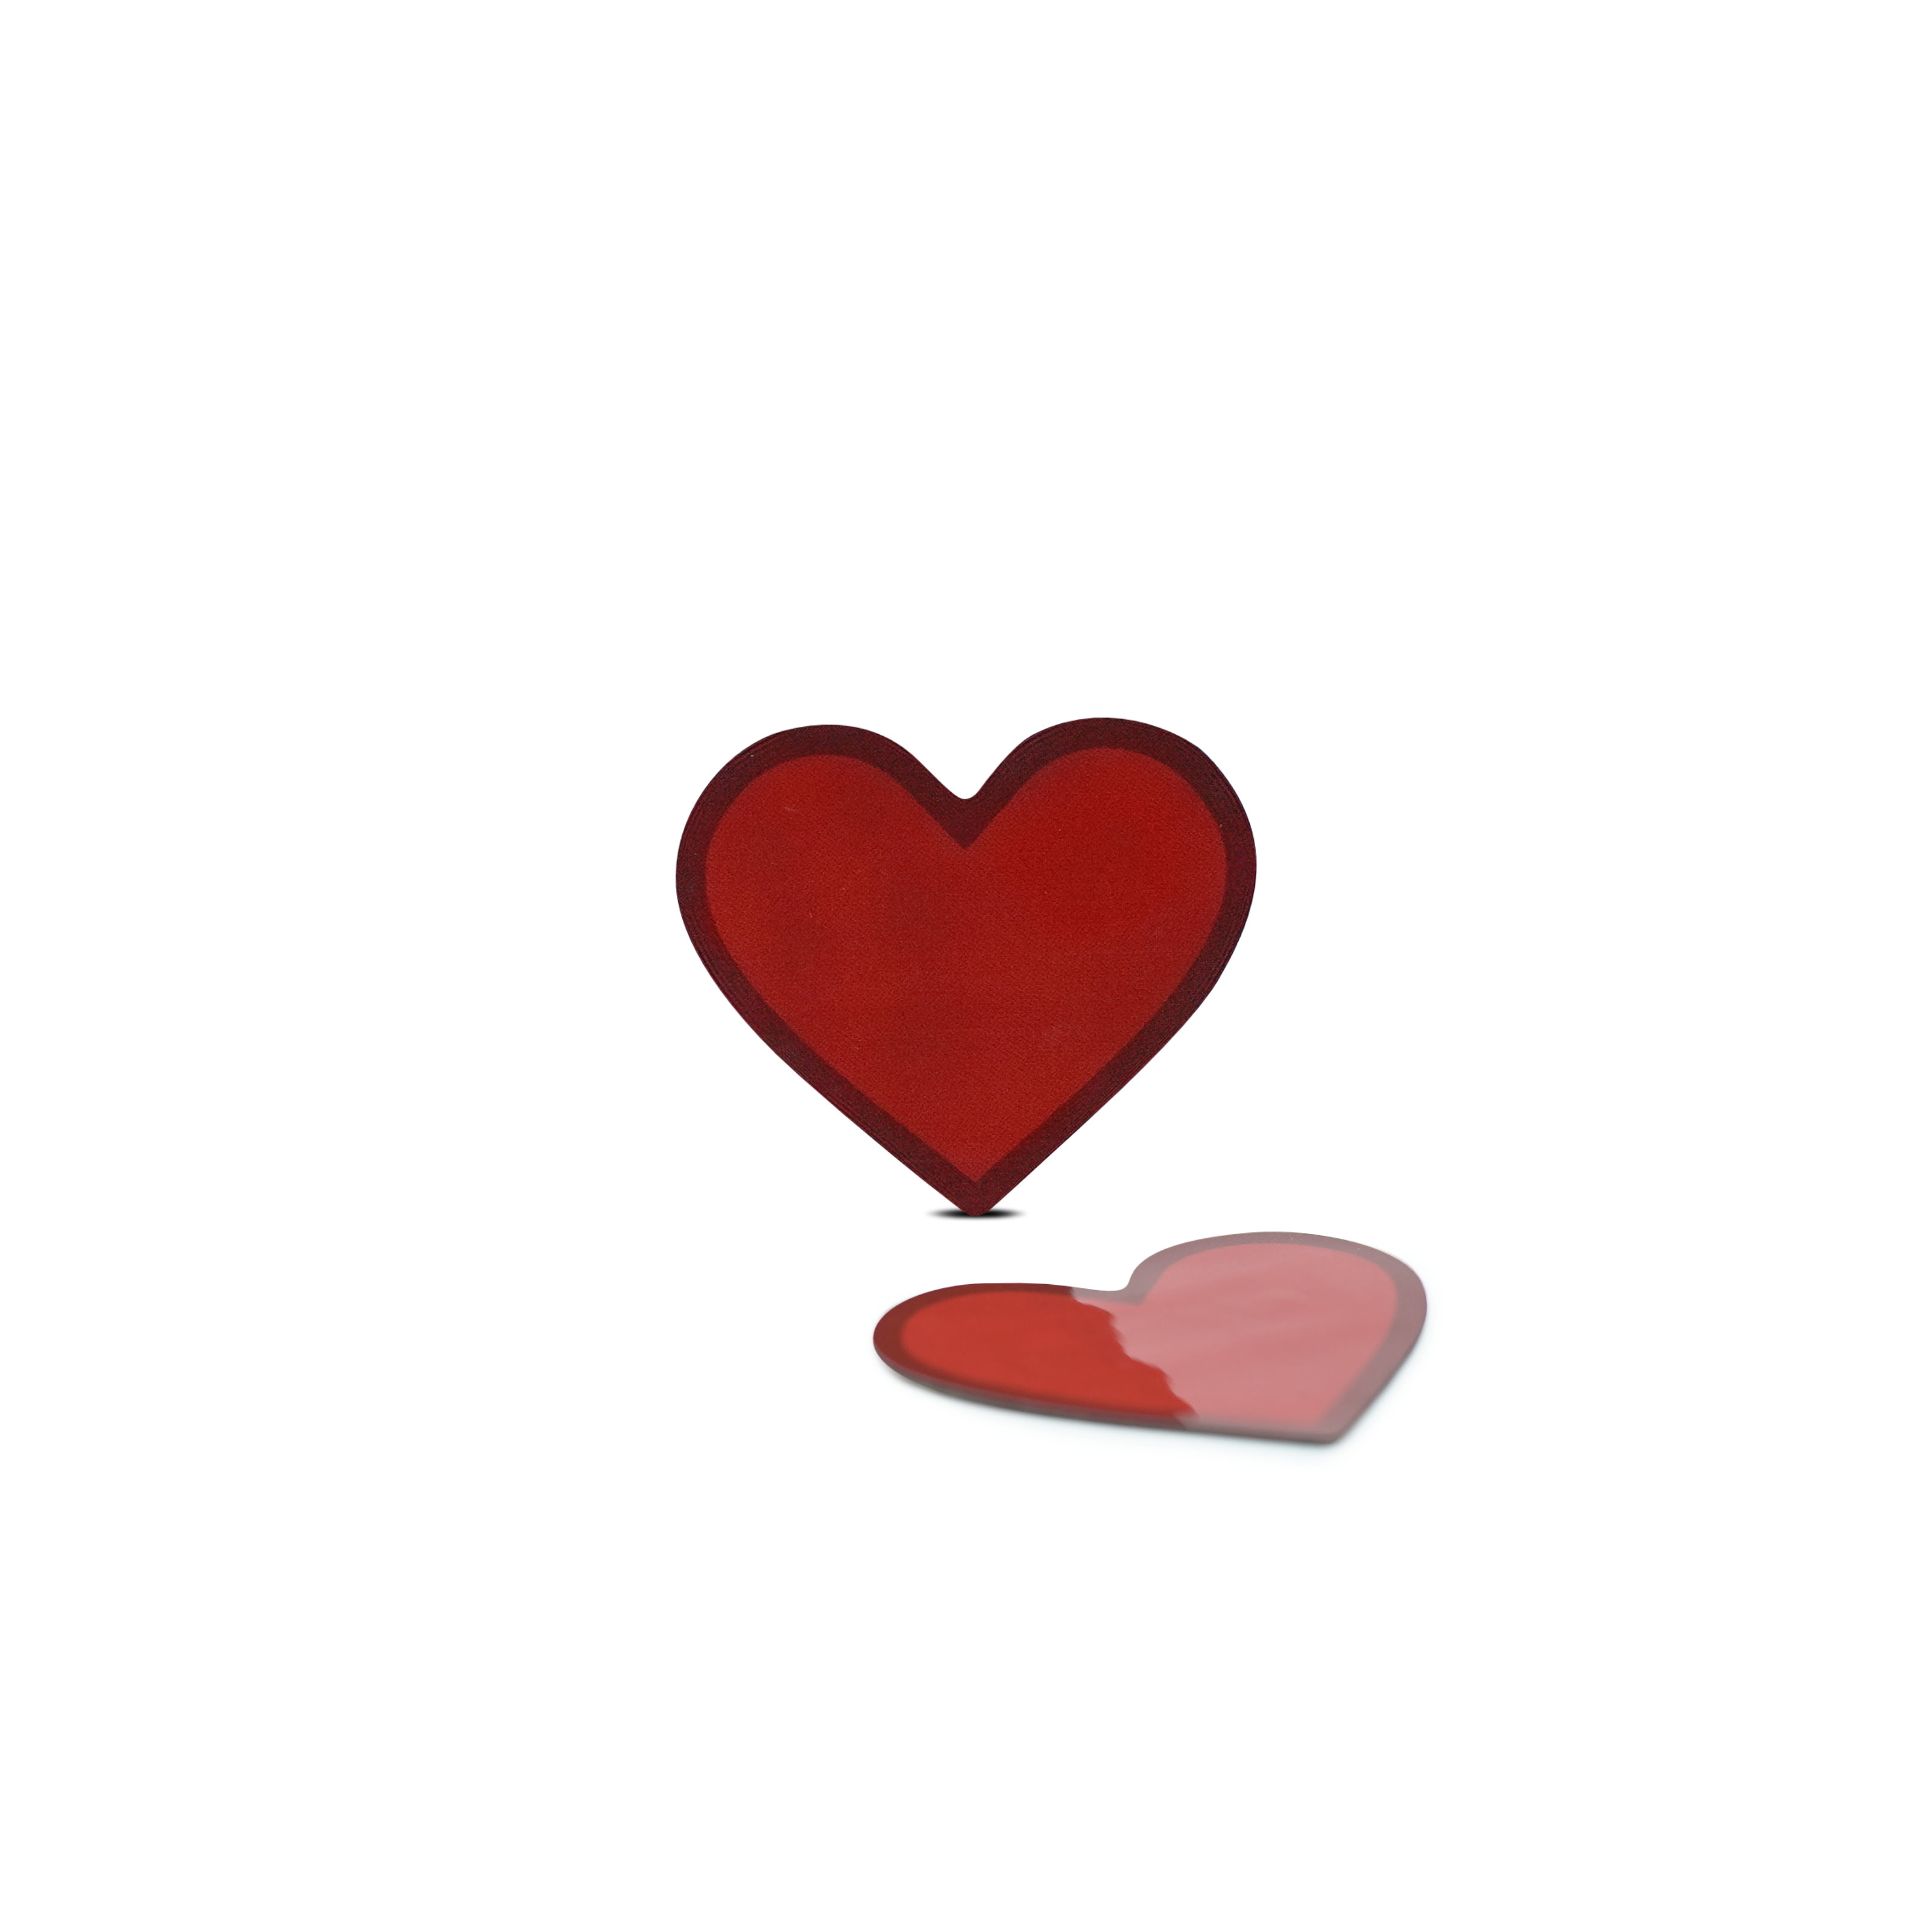 NFC Love Heart Sticker - Digital Messages - PET - 35 x 30 mm - red